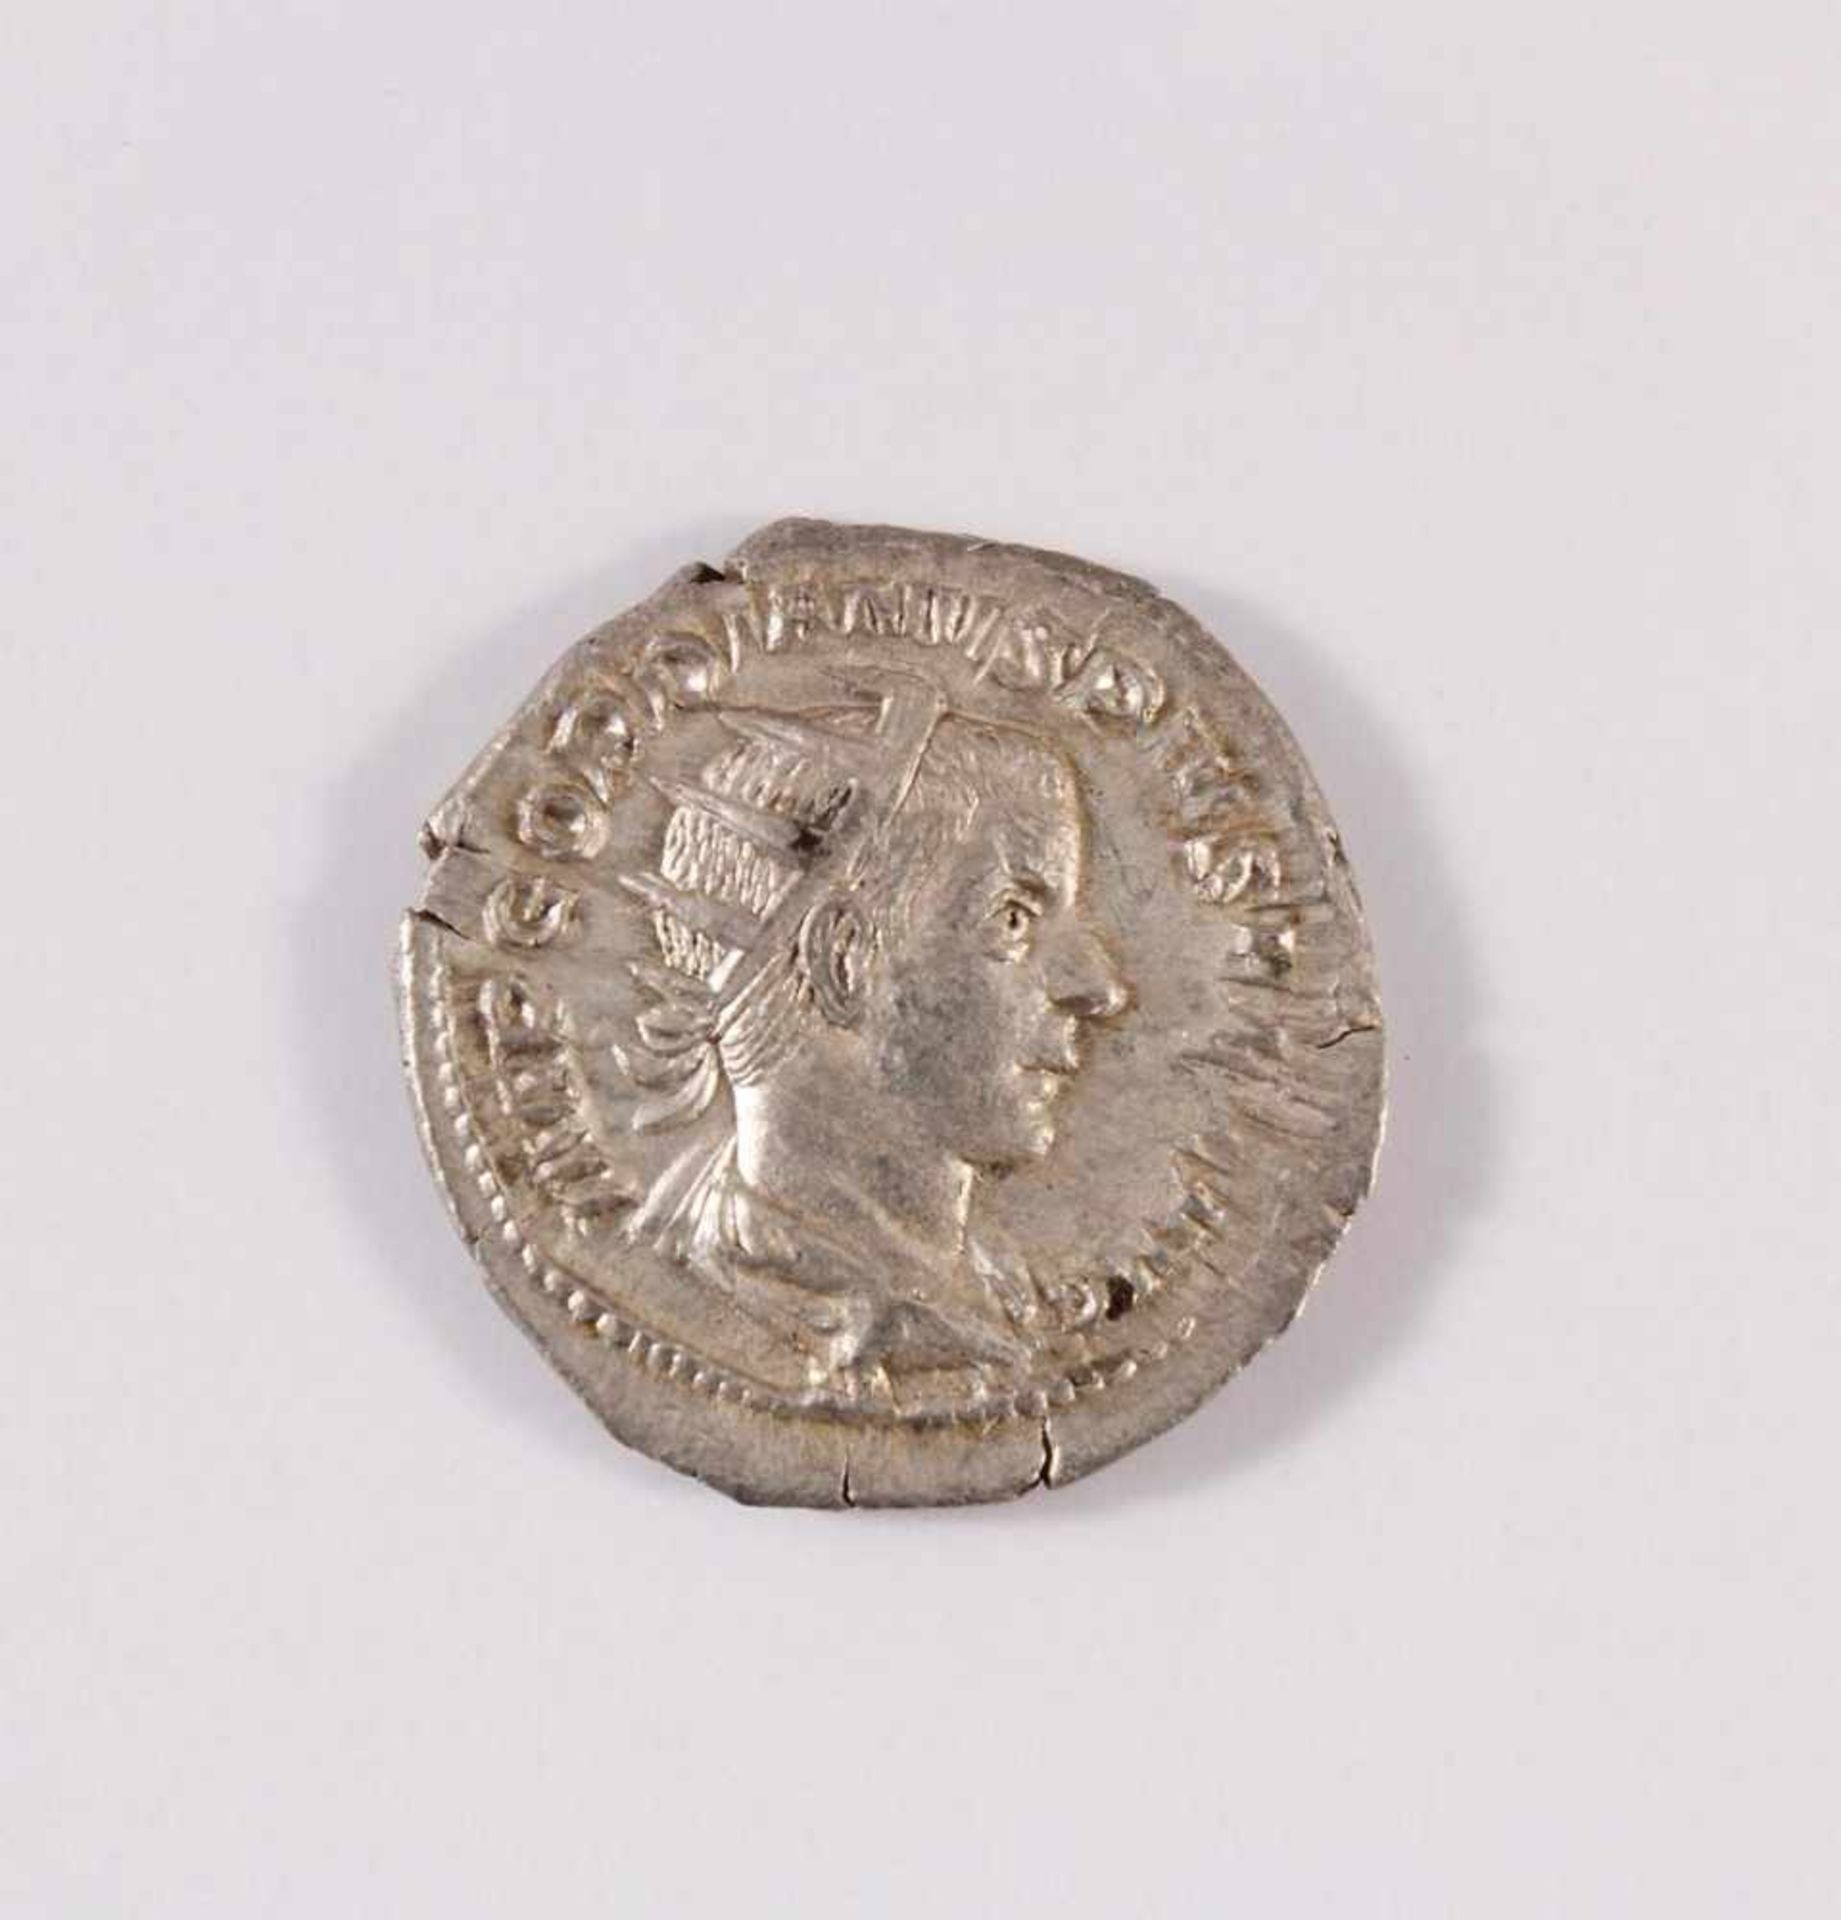 Gordian III, Antonian, Römischer Kaiser 238-244, DenarD-2,2 cm, 3,57 g.- - -20.00 % buyer's